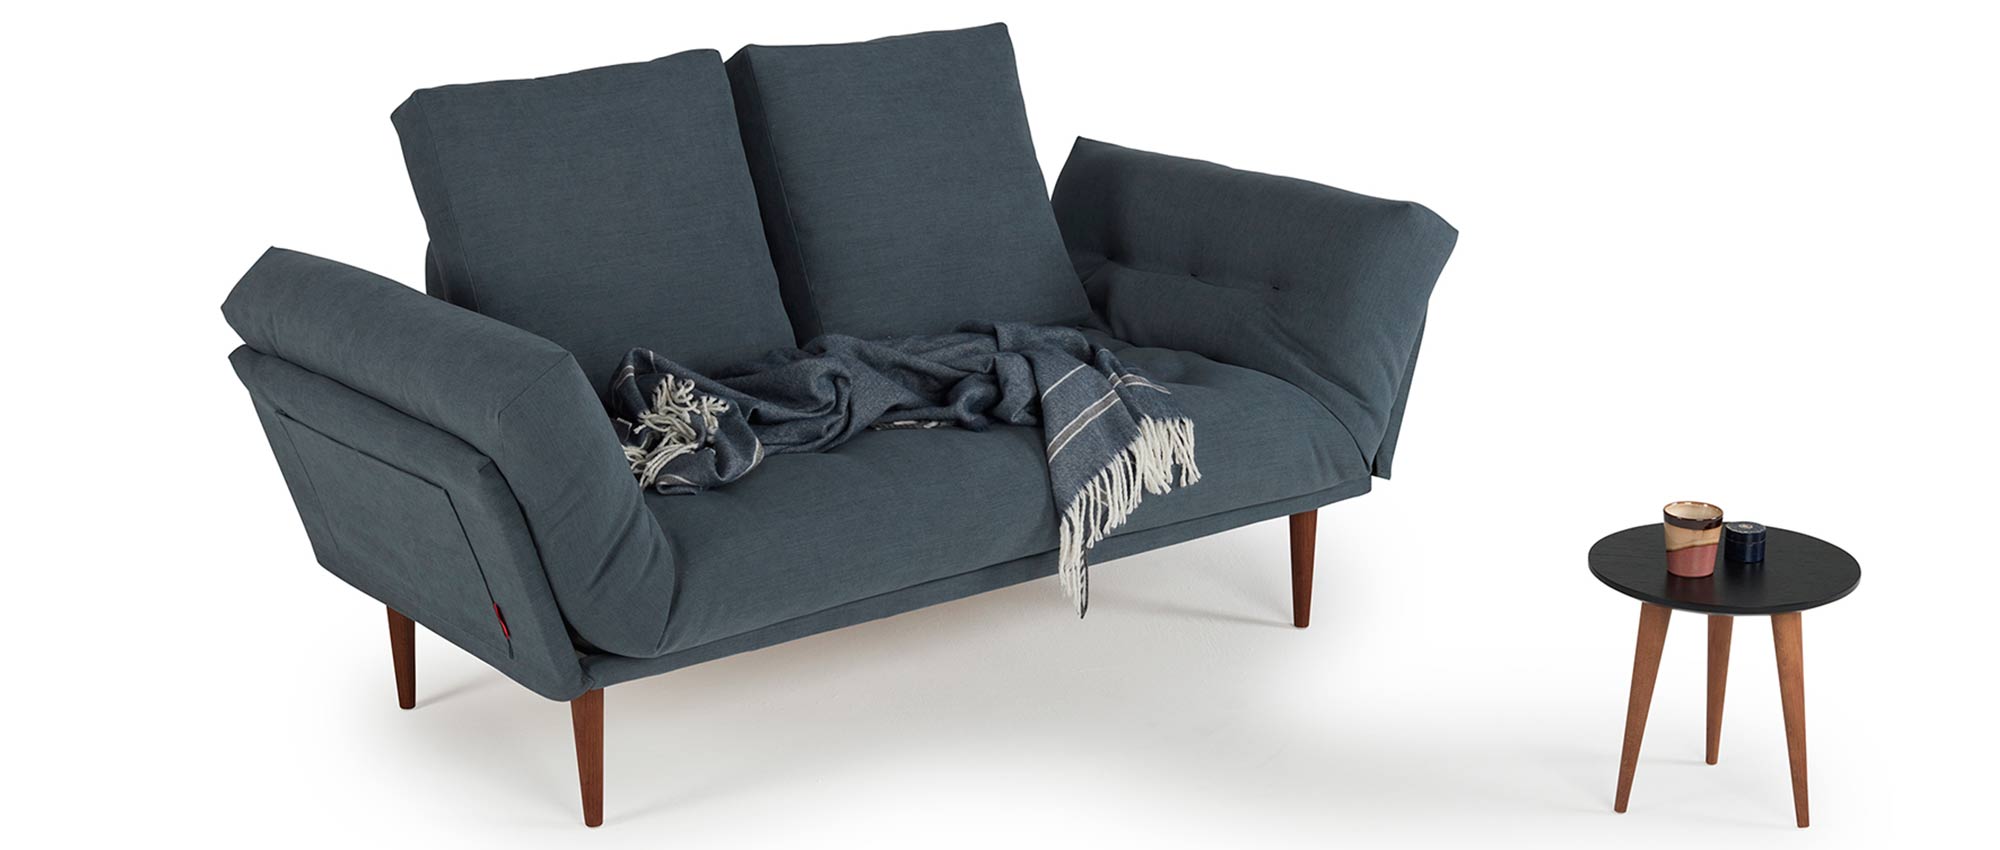 Sofabett für 1 Person von Innovation, Daybed und Sofa mit dunklen Holzfüßen - Liegefläche 80x200 cm